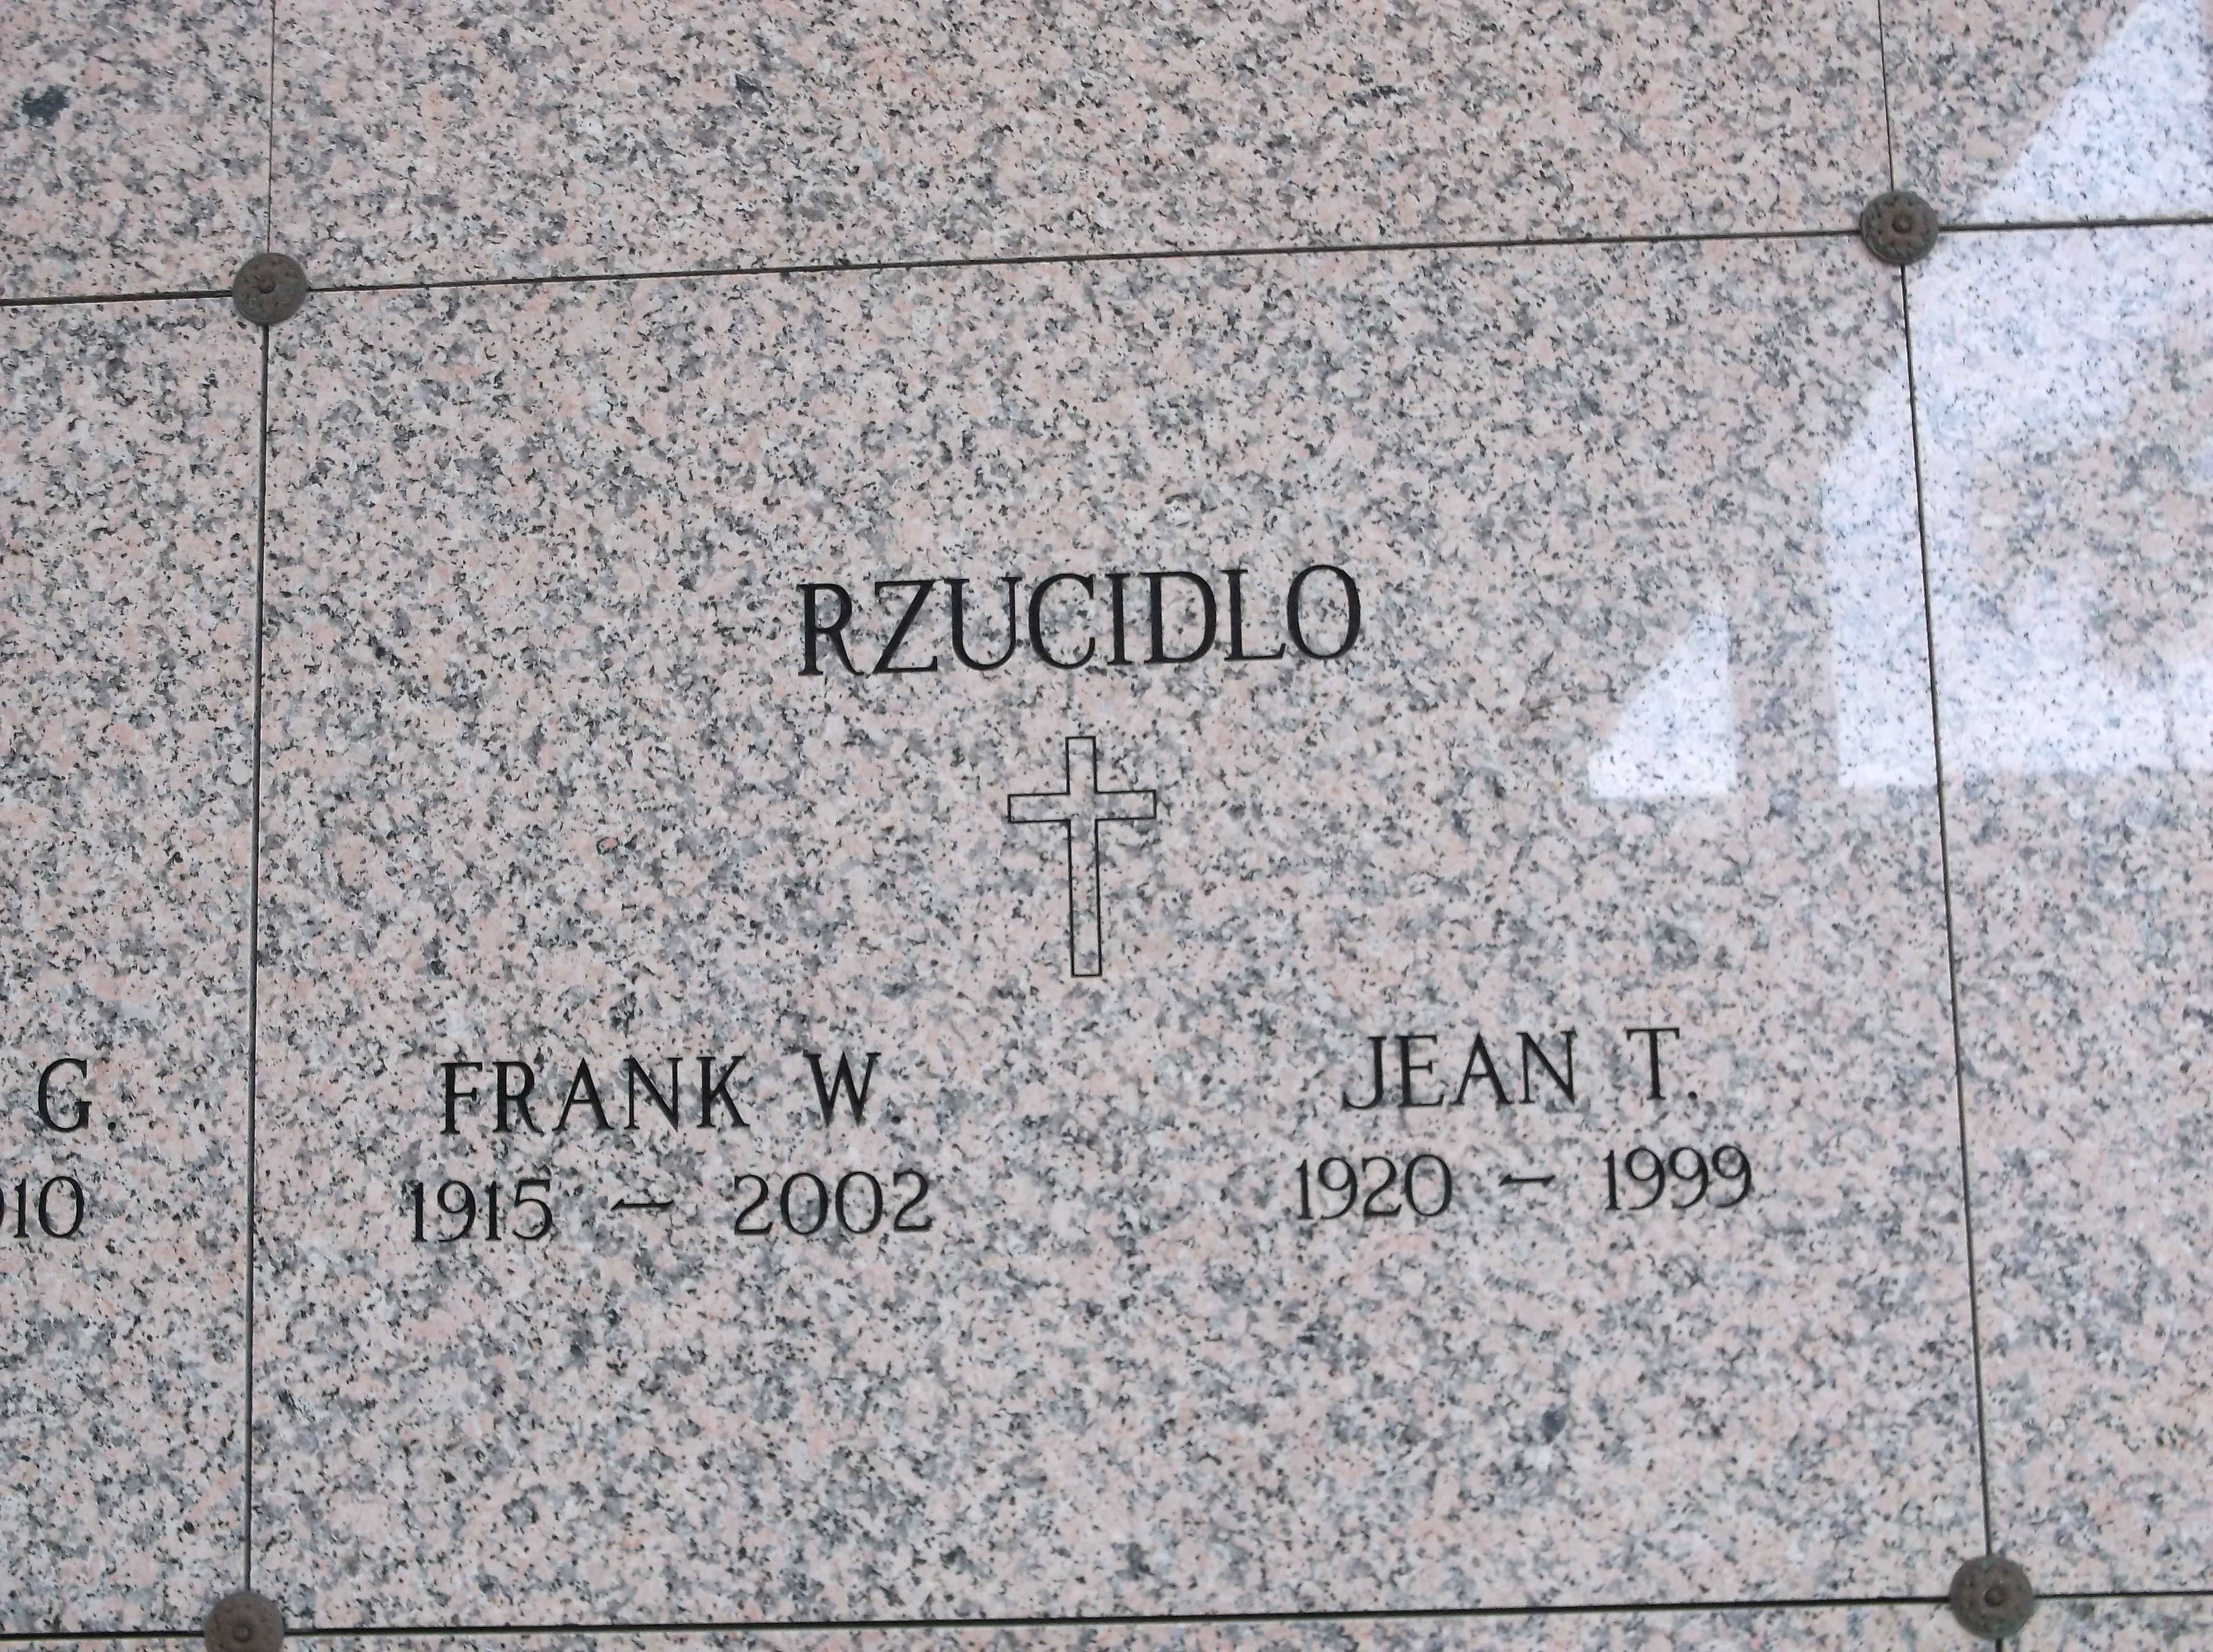 Jean T Rzucidlo